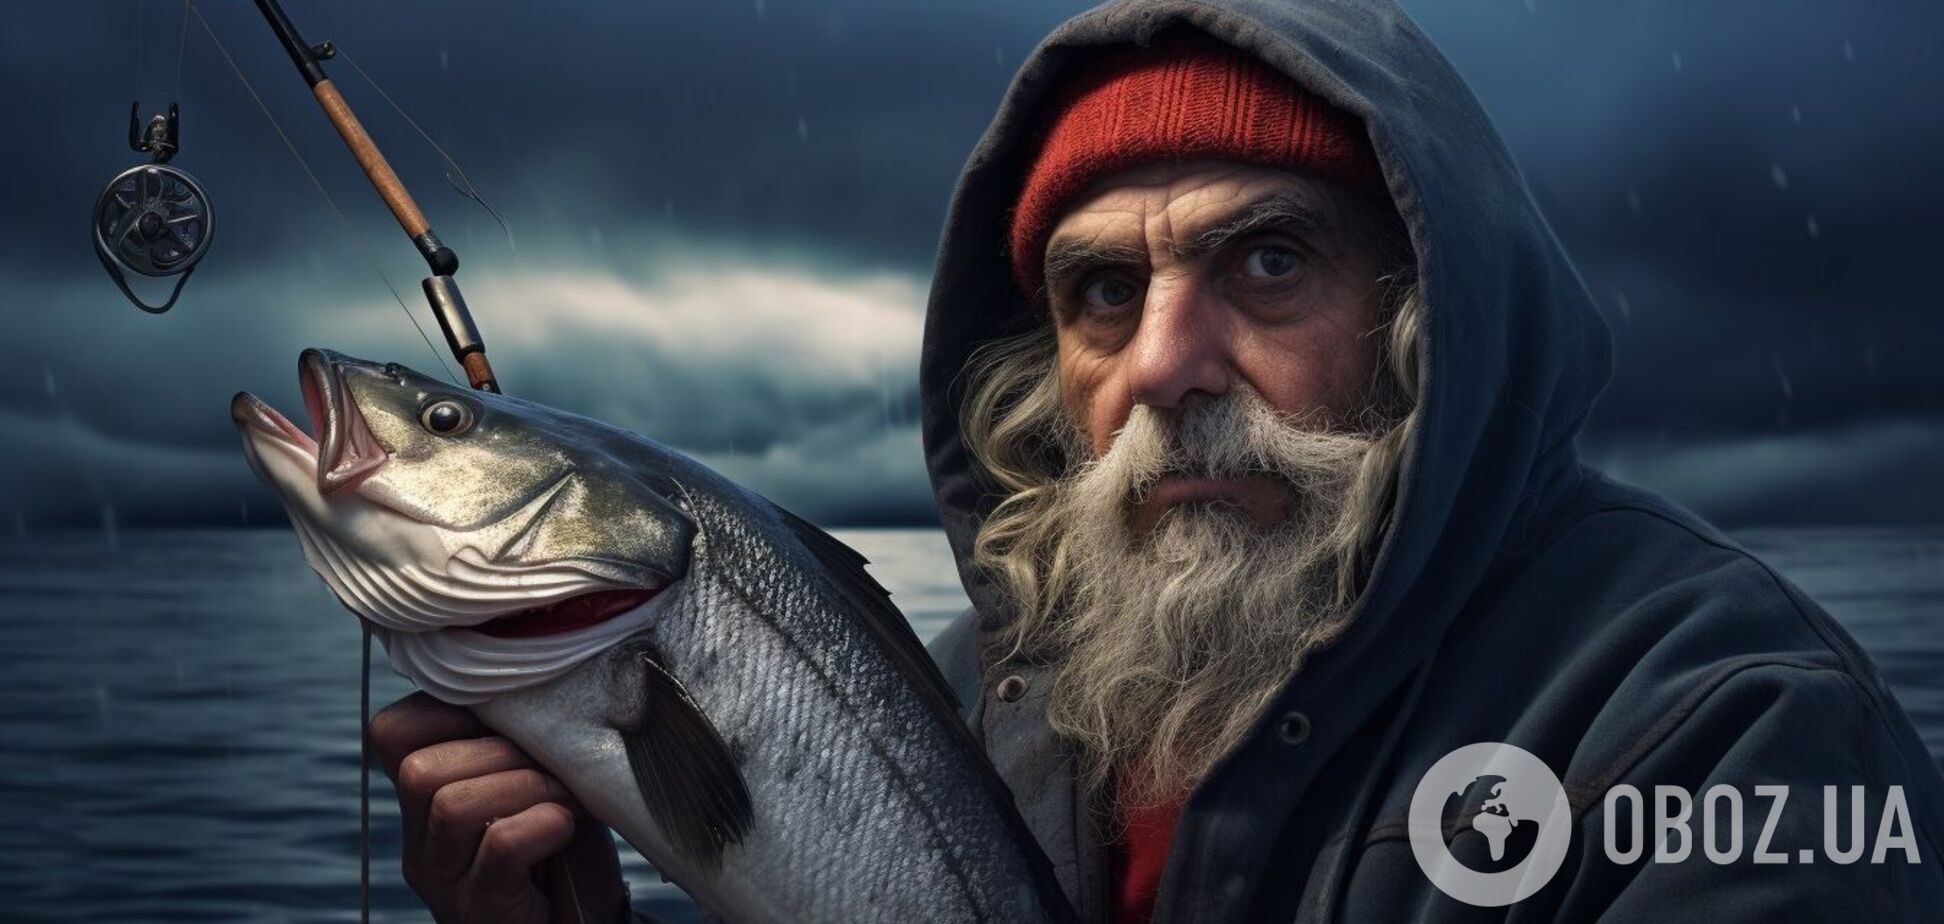 Как сделать, чтобы рыба хорошо клевала: простые советы рыбакам